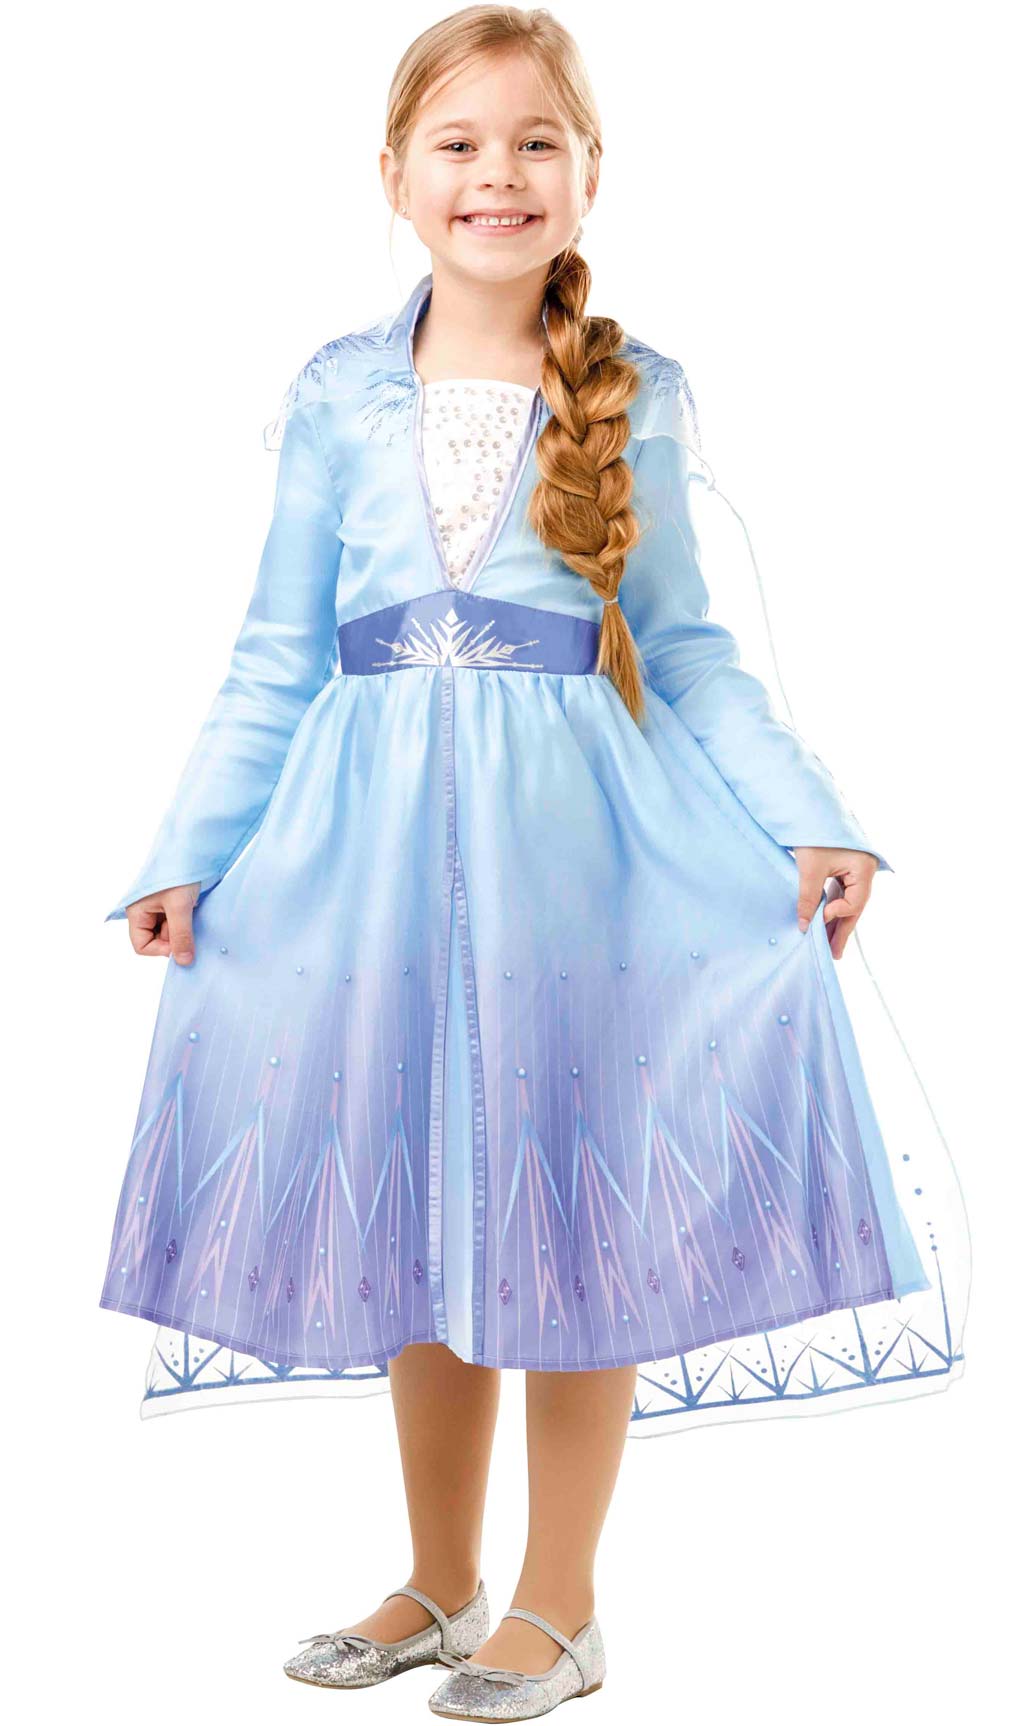 Costume de Elsa pour enfants, La Reine des Neiges 2